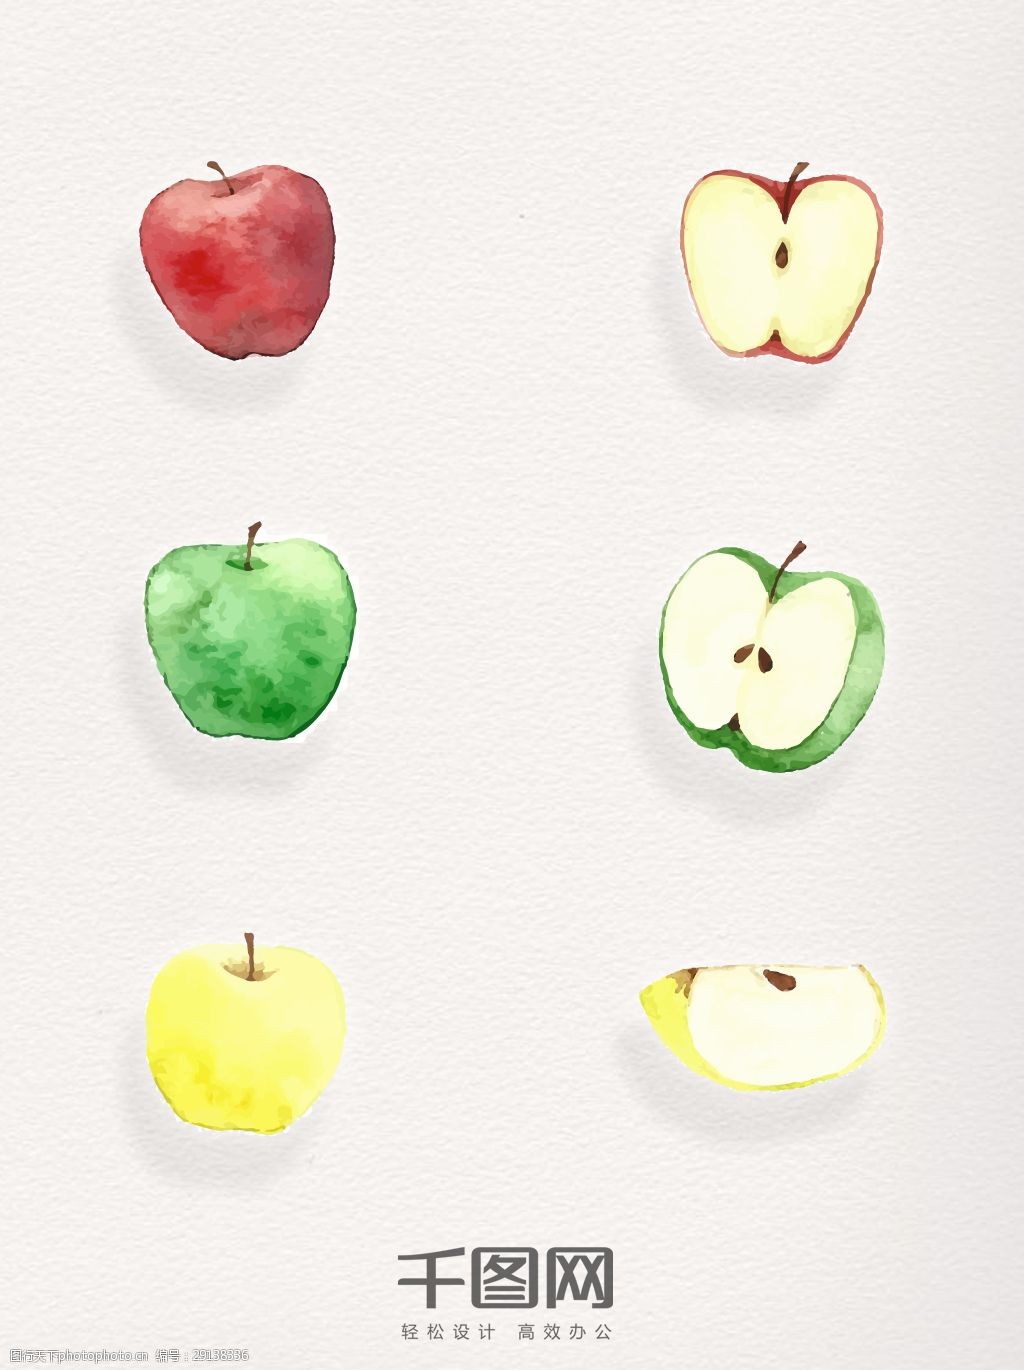 关键词:手绘卡通平安夜平安果 卡通 手绘 水彩 苹果 红苹果 绿苹果 黄